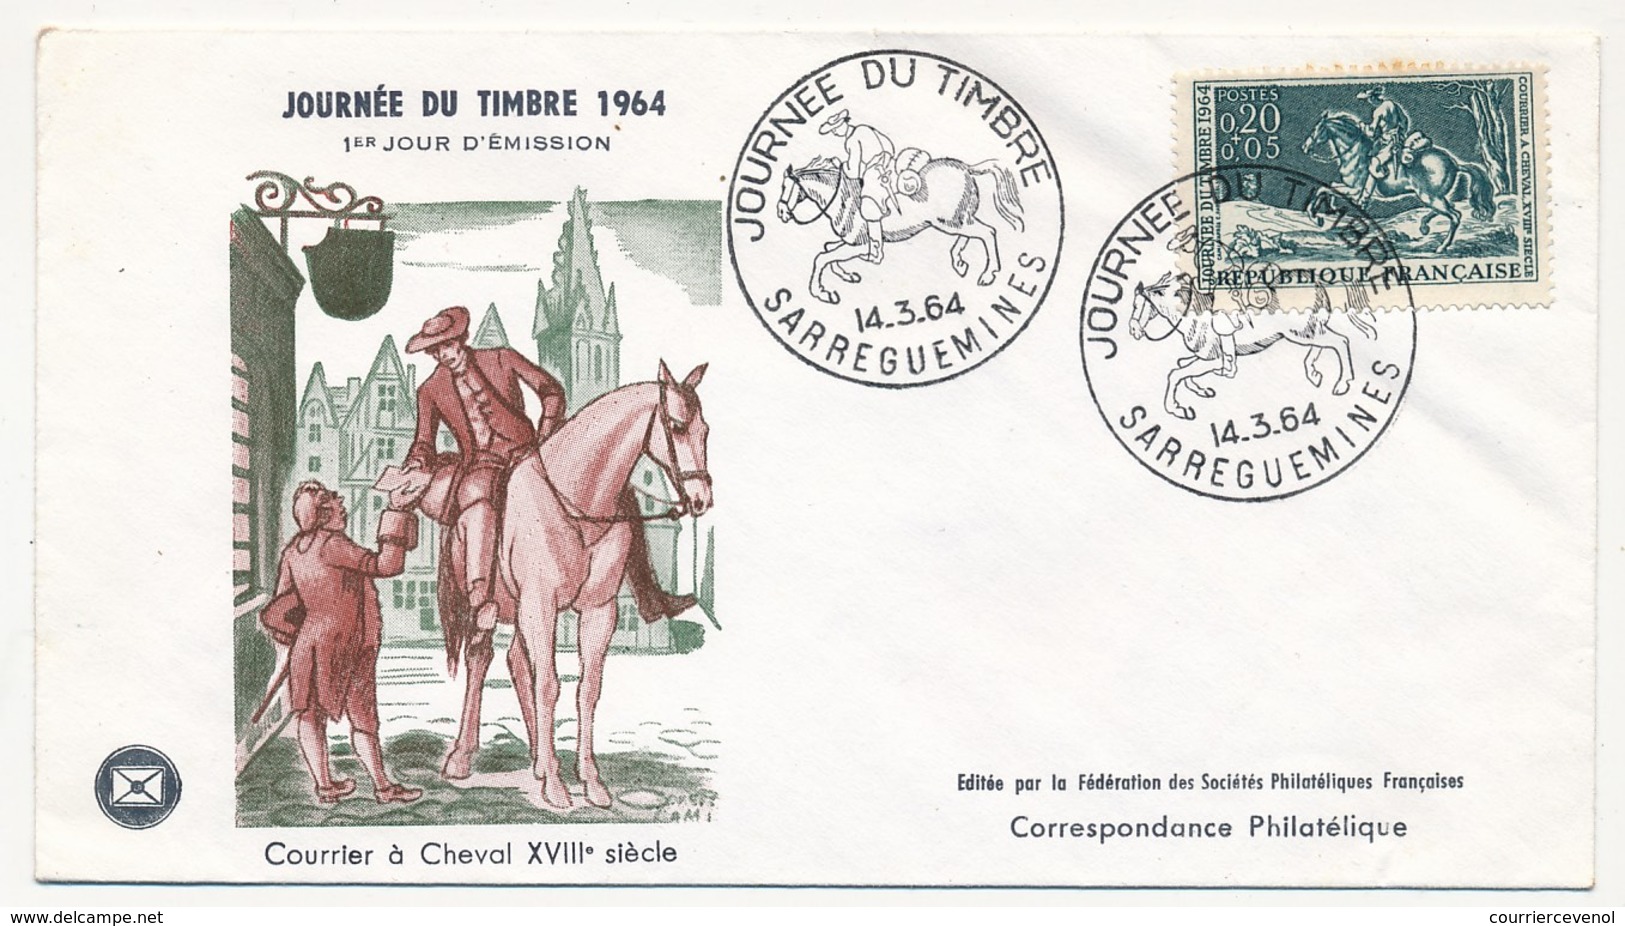 FRANCE - Enveloppe FDC - Journée Du Timbre 1964 (Courrier à Cheval XVIIIeme Siècle) - SARREGUEMINES 14.3.1964 - Día Del Sello